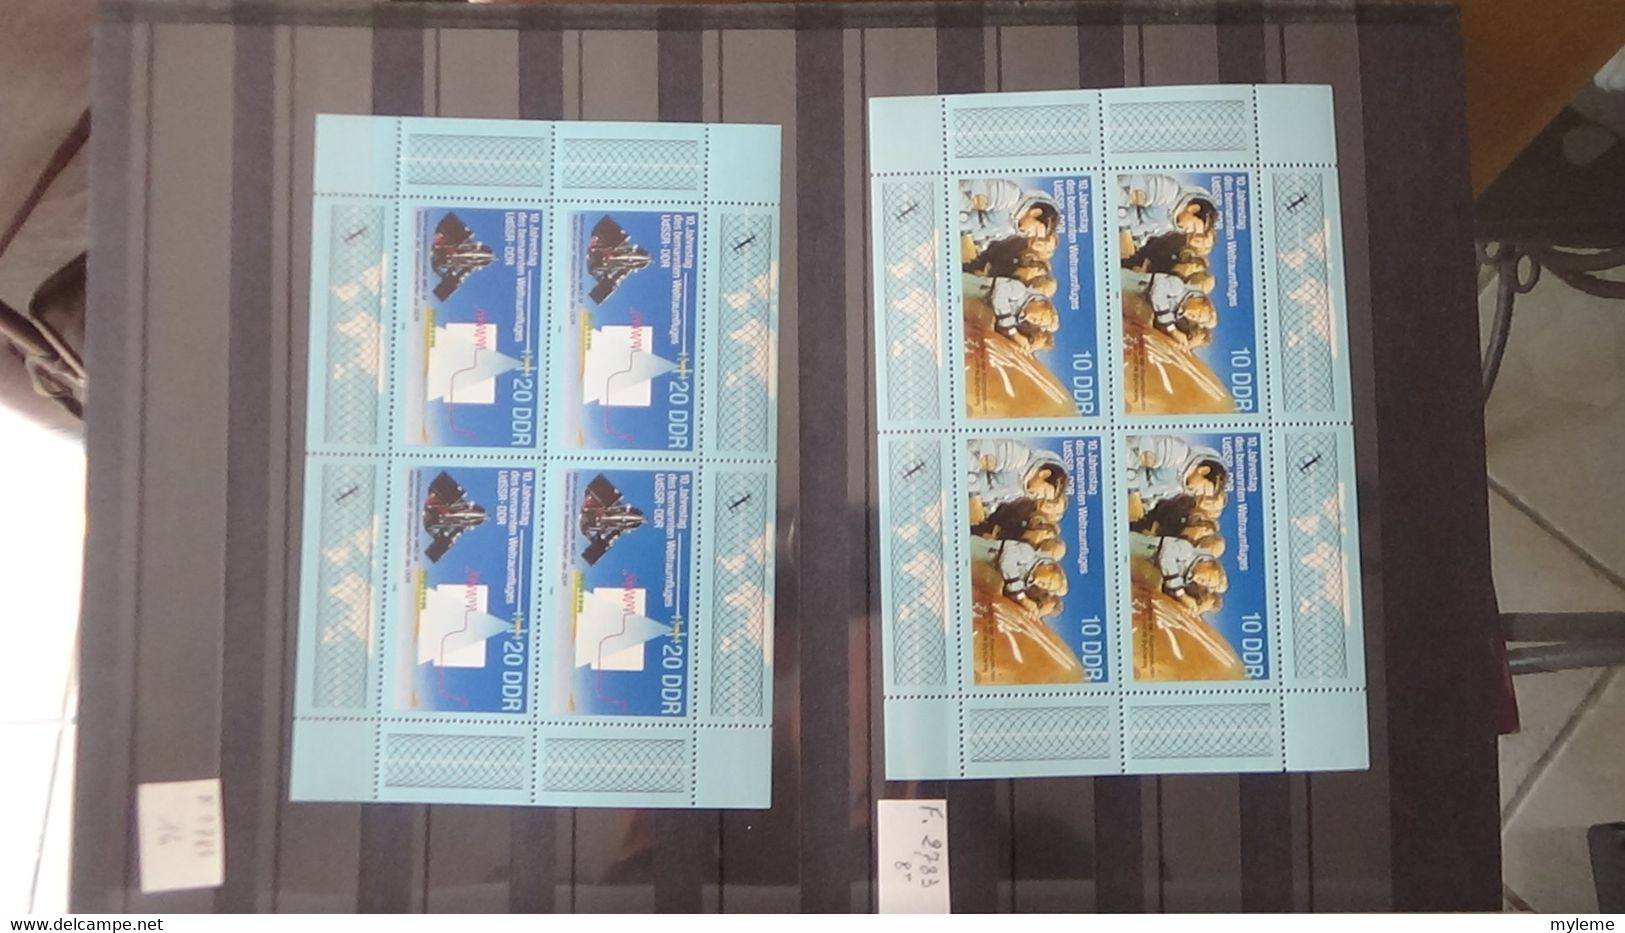 Z79 Collection de timbres et blocs ** d'Allemagne DDR (quelques oblitérés mais très peu)    A saisir !!!